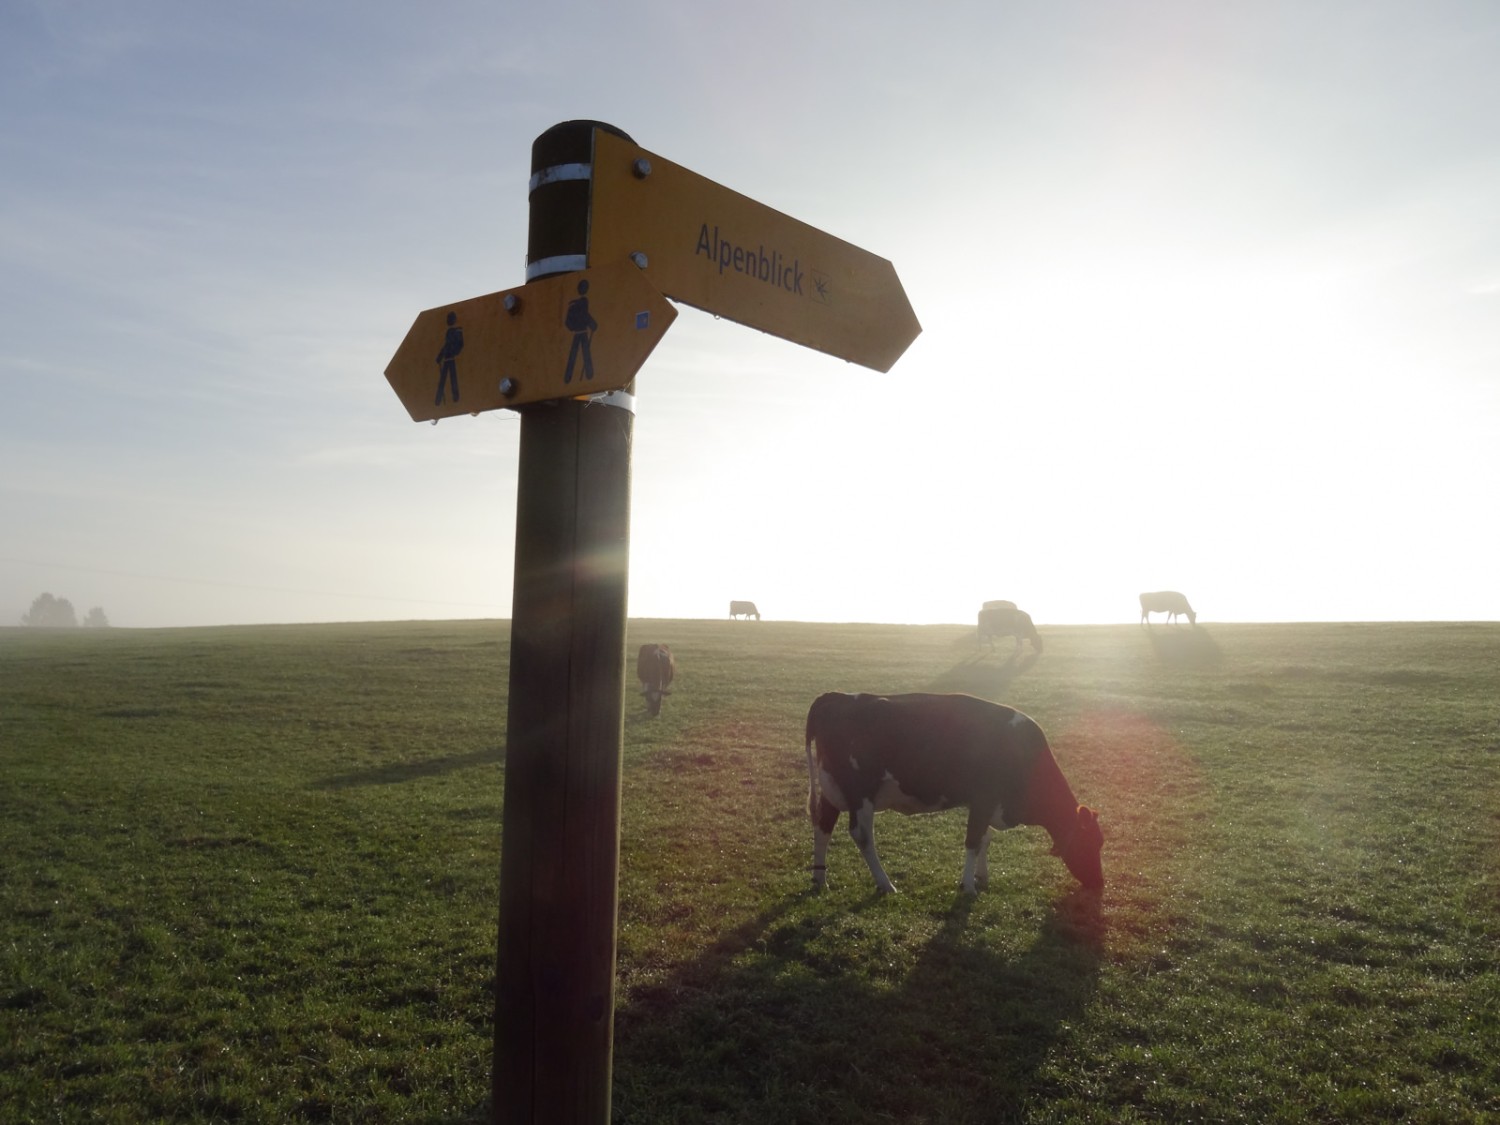 Les vaches apprécient-elles aussi le paysage lorsque le brouillard se lève? 